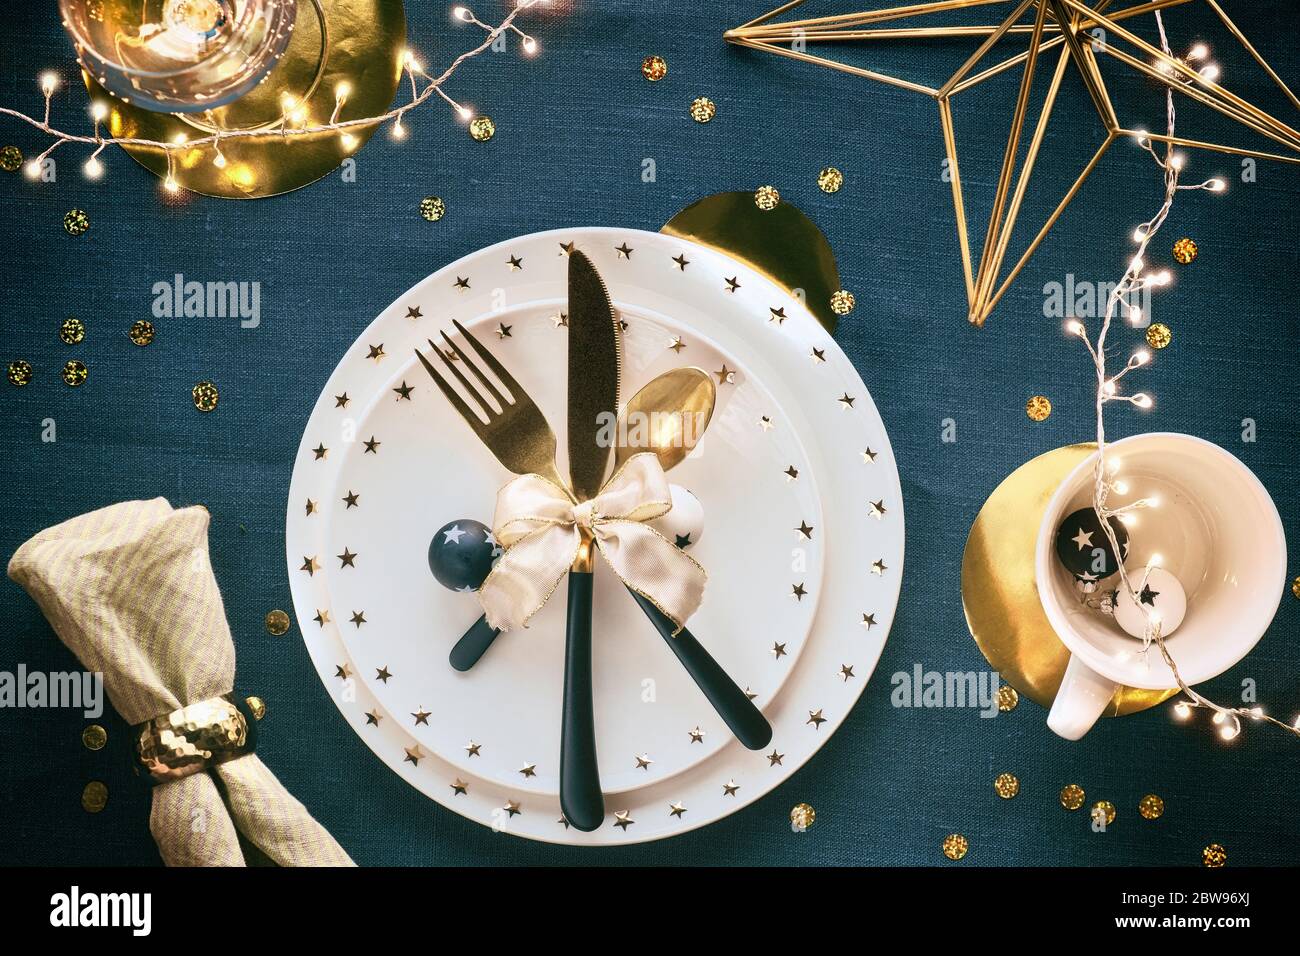 Tavolo natalizio con piatto bianco, utensili dorati e decorazioni dorate. Disposizione piatta, vista dall'alto sul retro in tessuto da tavolo di lino azzurro, verde scuro Foto Stock